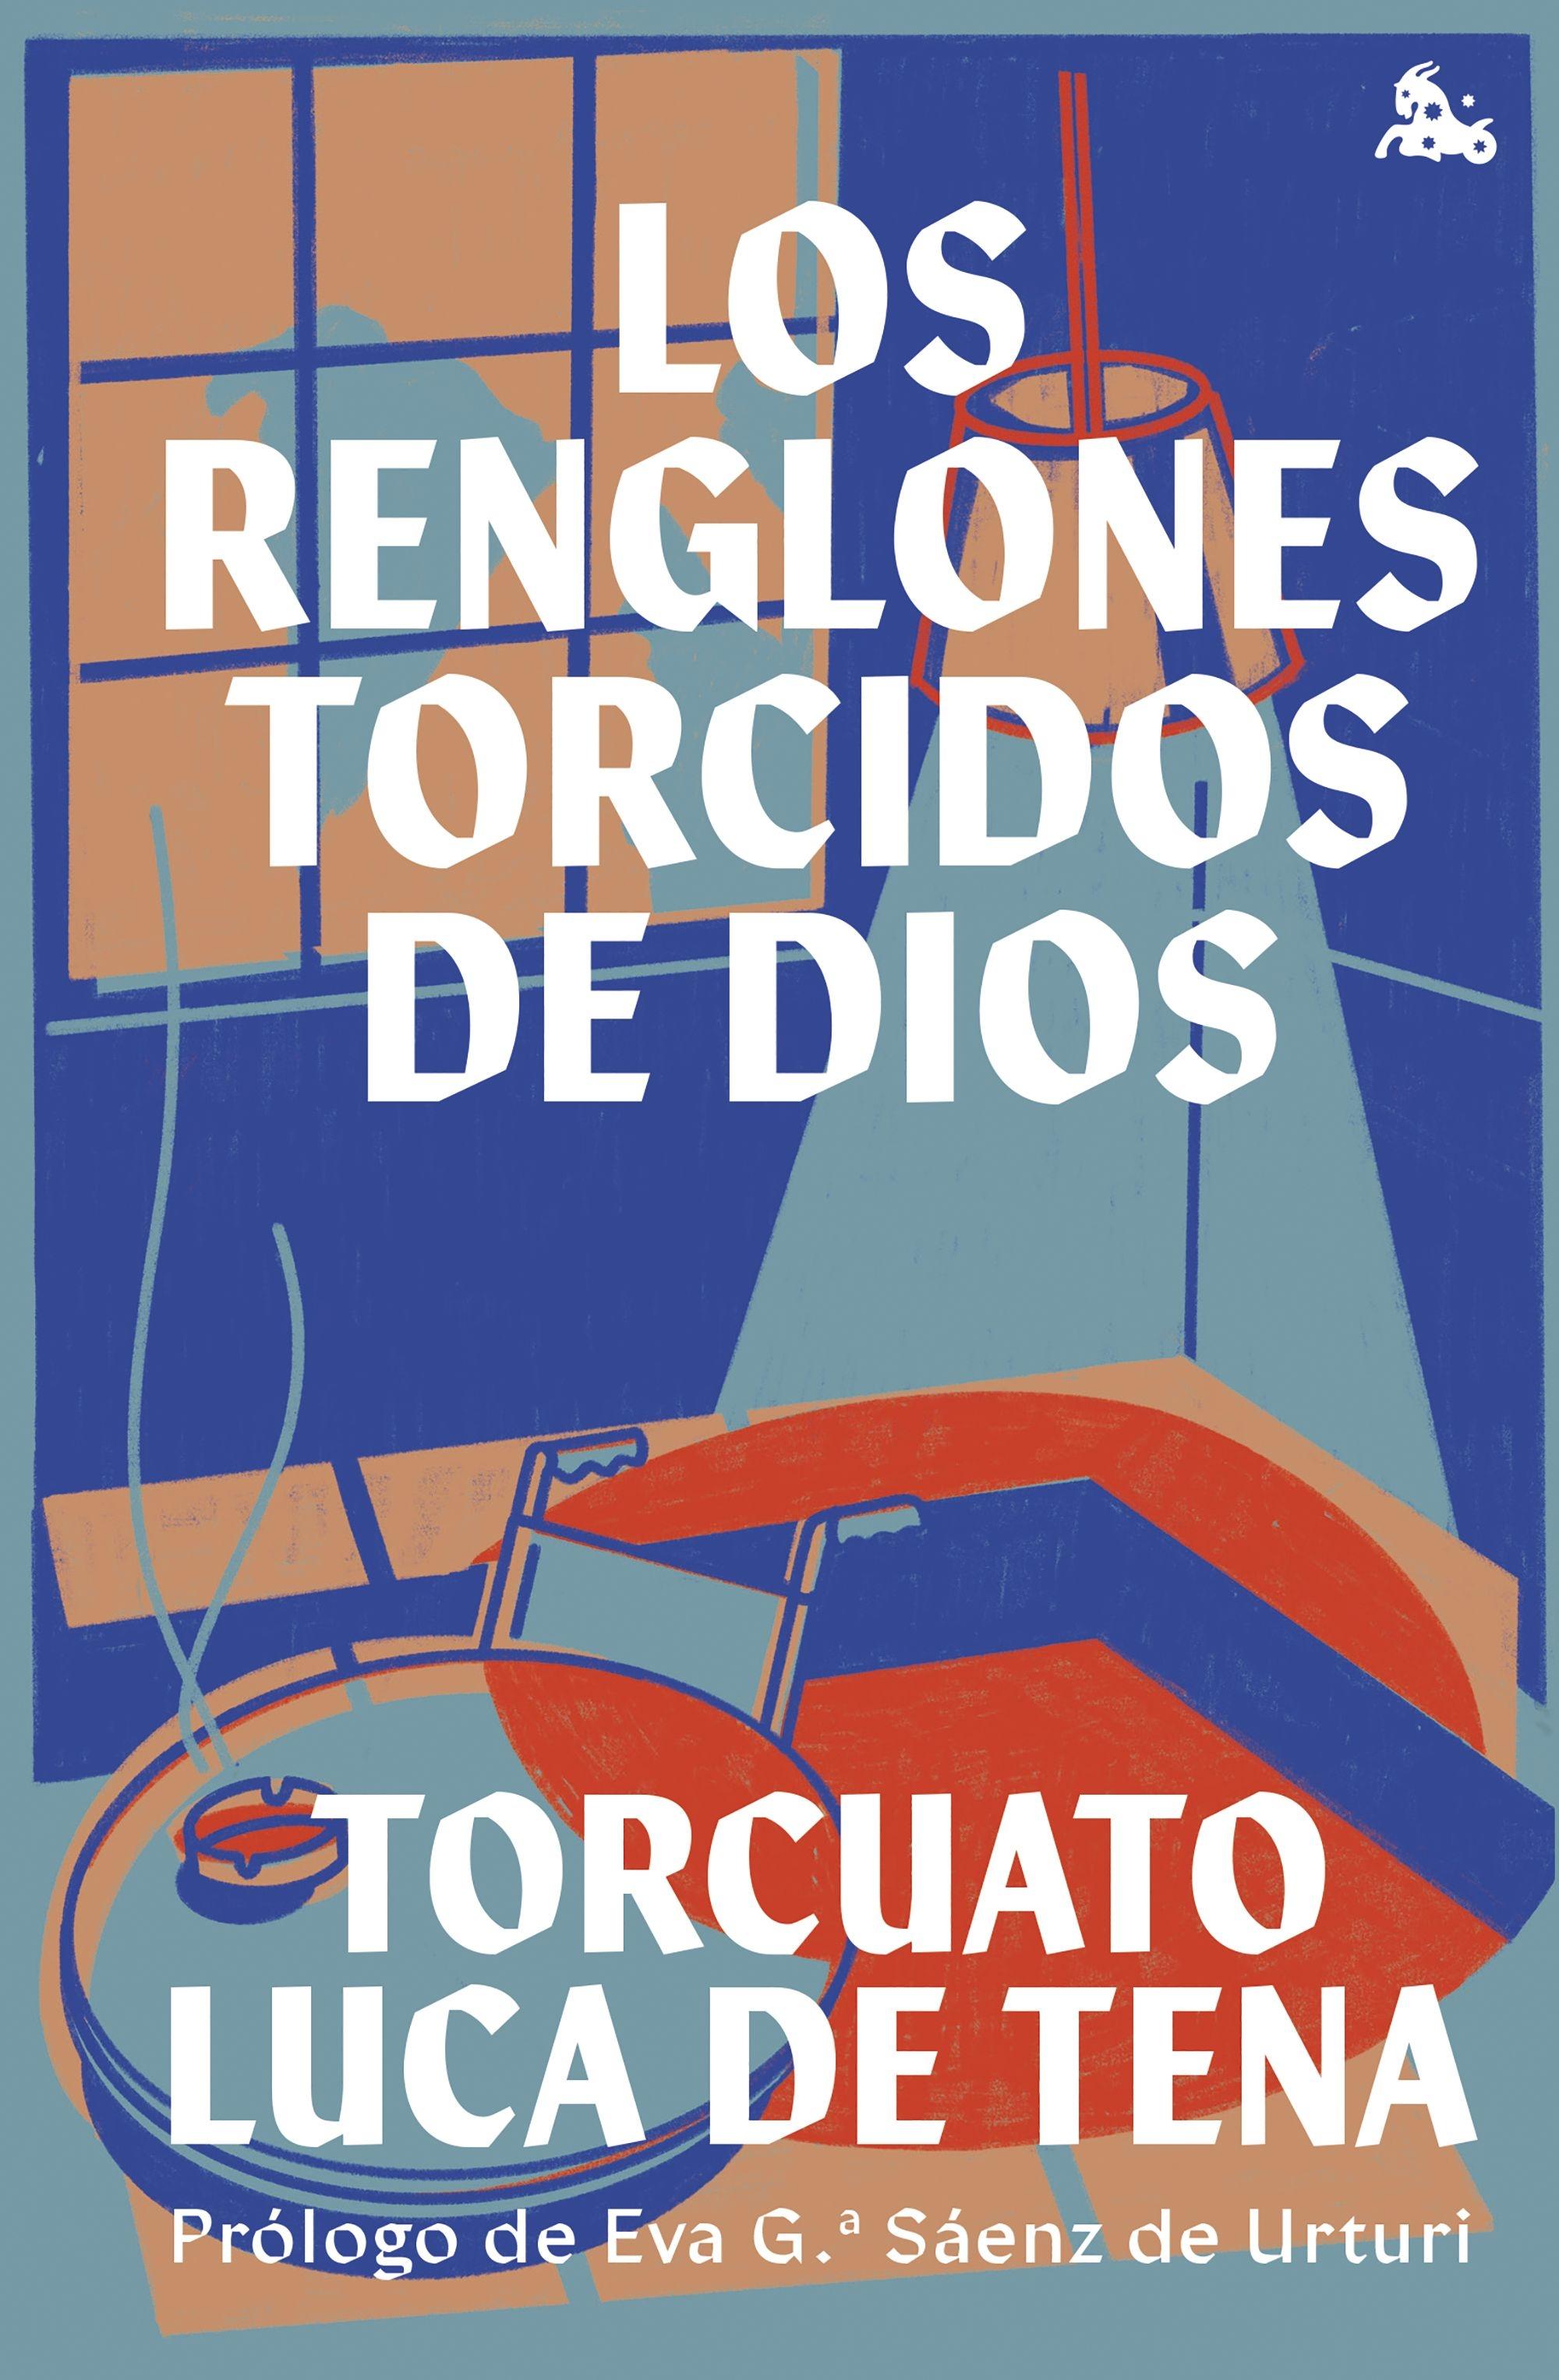 Los renglones torcidos de Dios "Prólogo de Eva García Sáenz de Urturi"